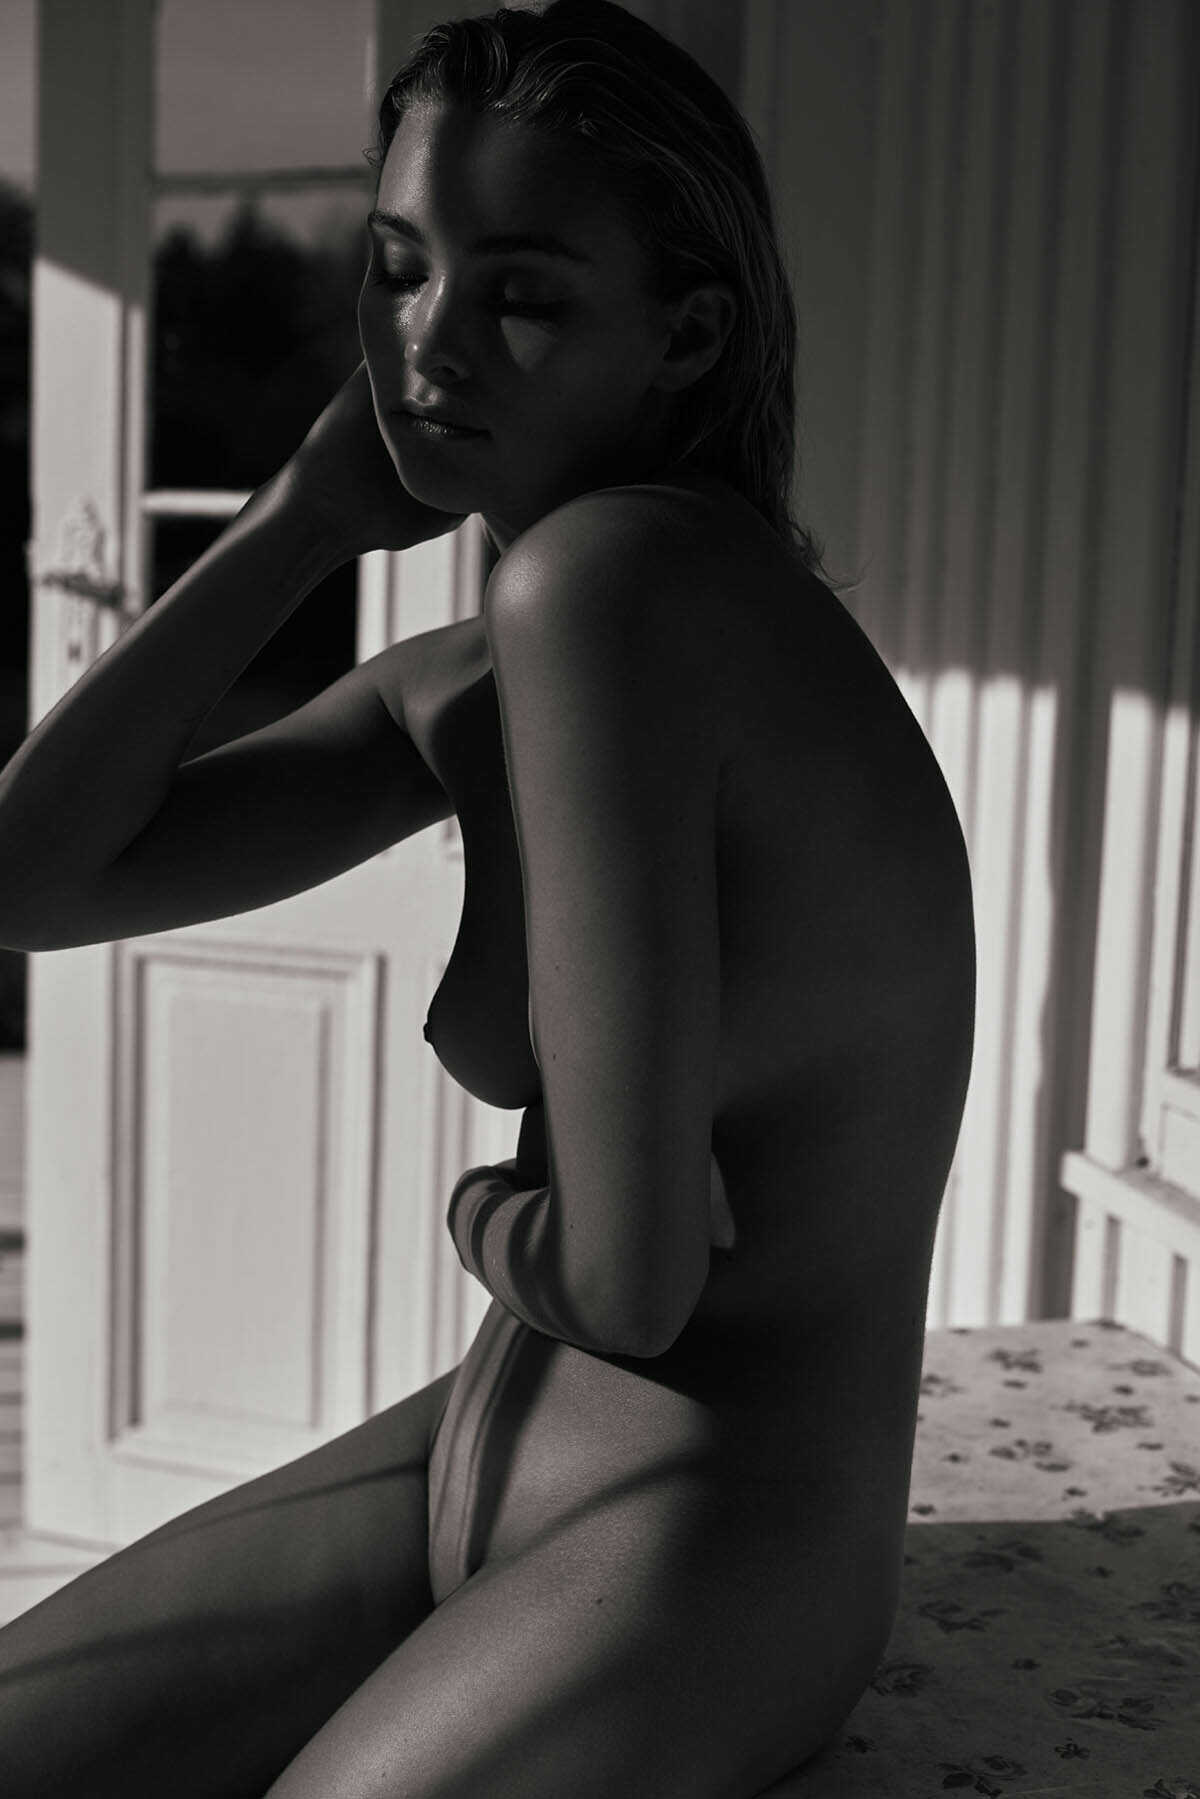 Η μουνάρα μοντέλο Nikki Hillier σε γυμνές φωτογραφίες